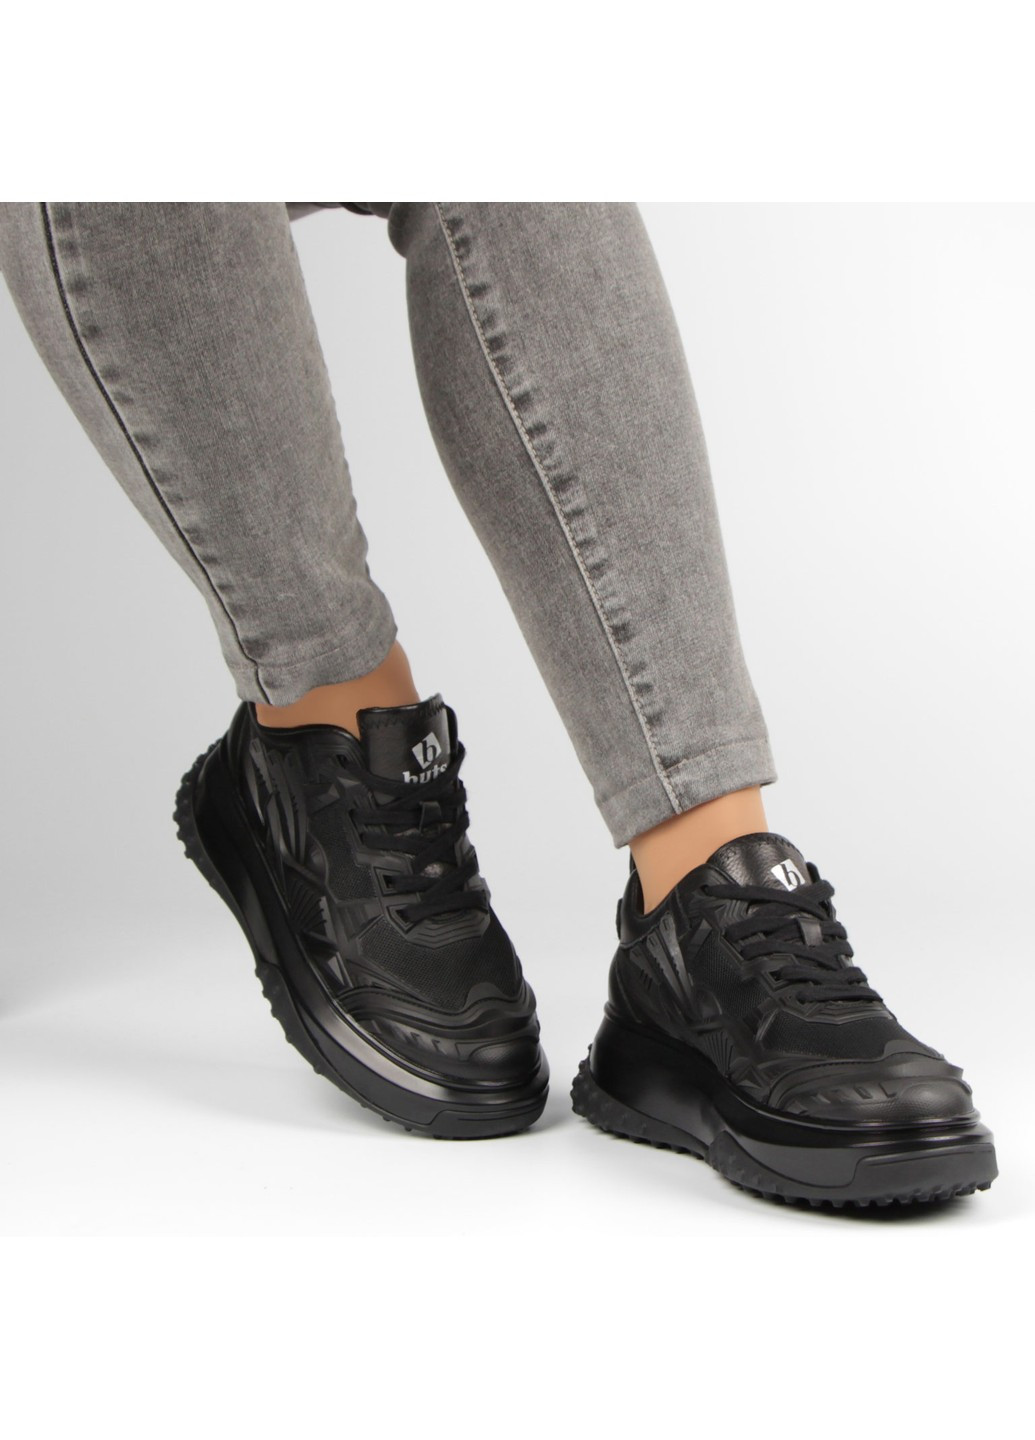 Черные демисезонные женские кроссовки 198000 Buts